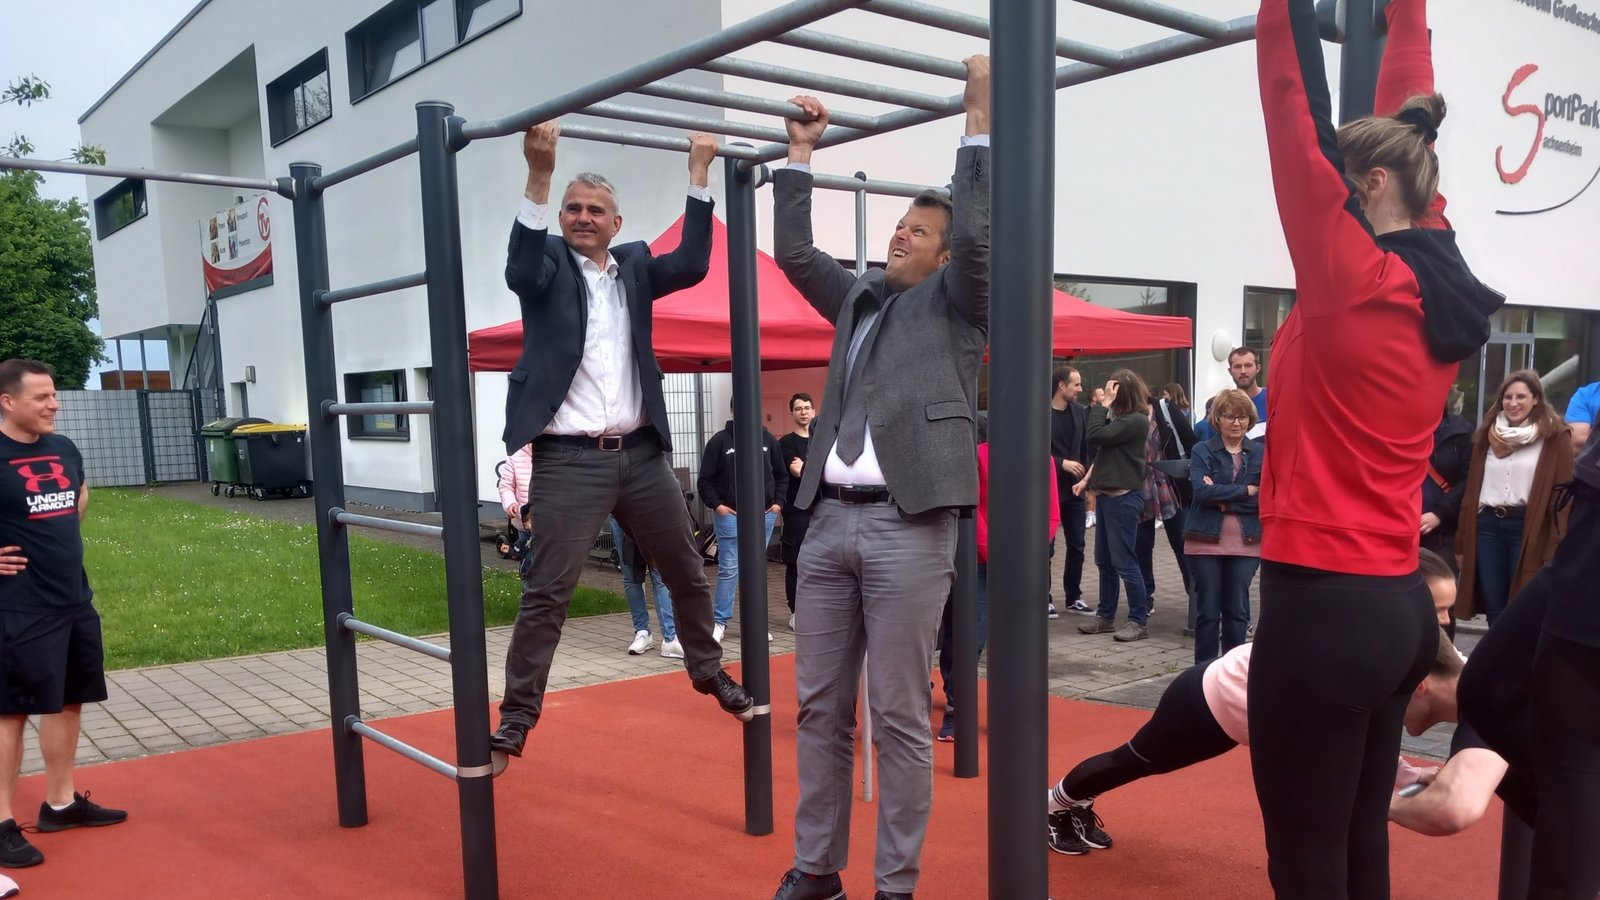 Die Anlage bietet Trainingsmöglichkeiten für viele Muskelpartien. Auch Bürgermeister Holger Albrich (links) testete das Angebot.  Foto: Glemser